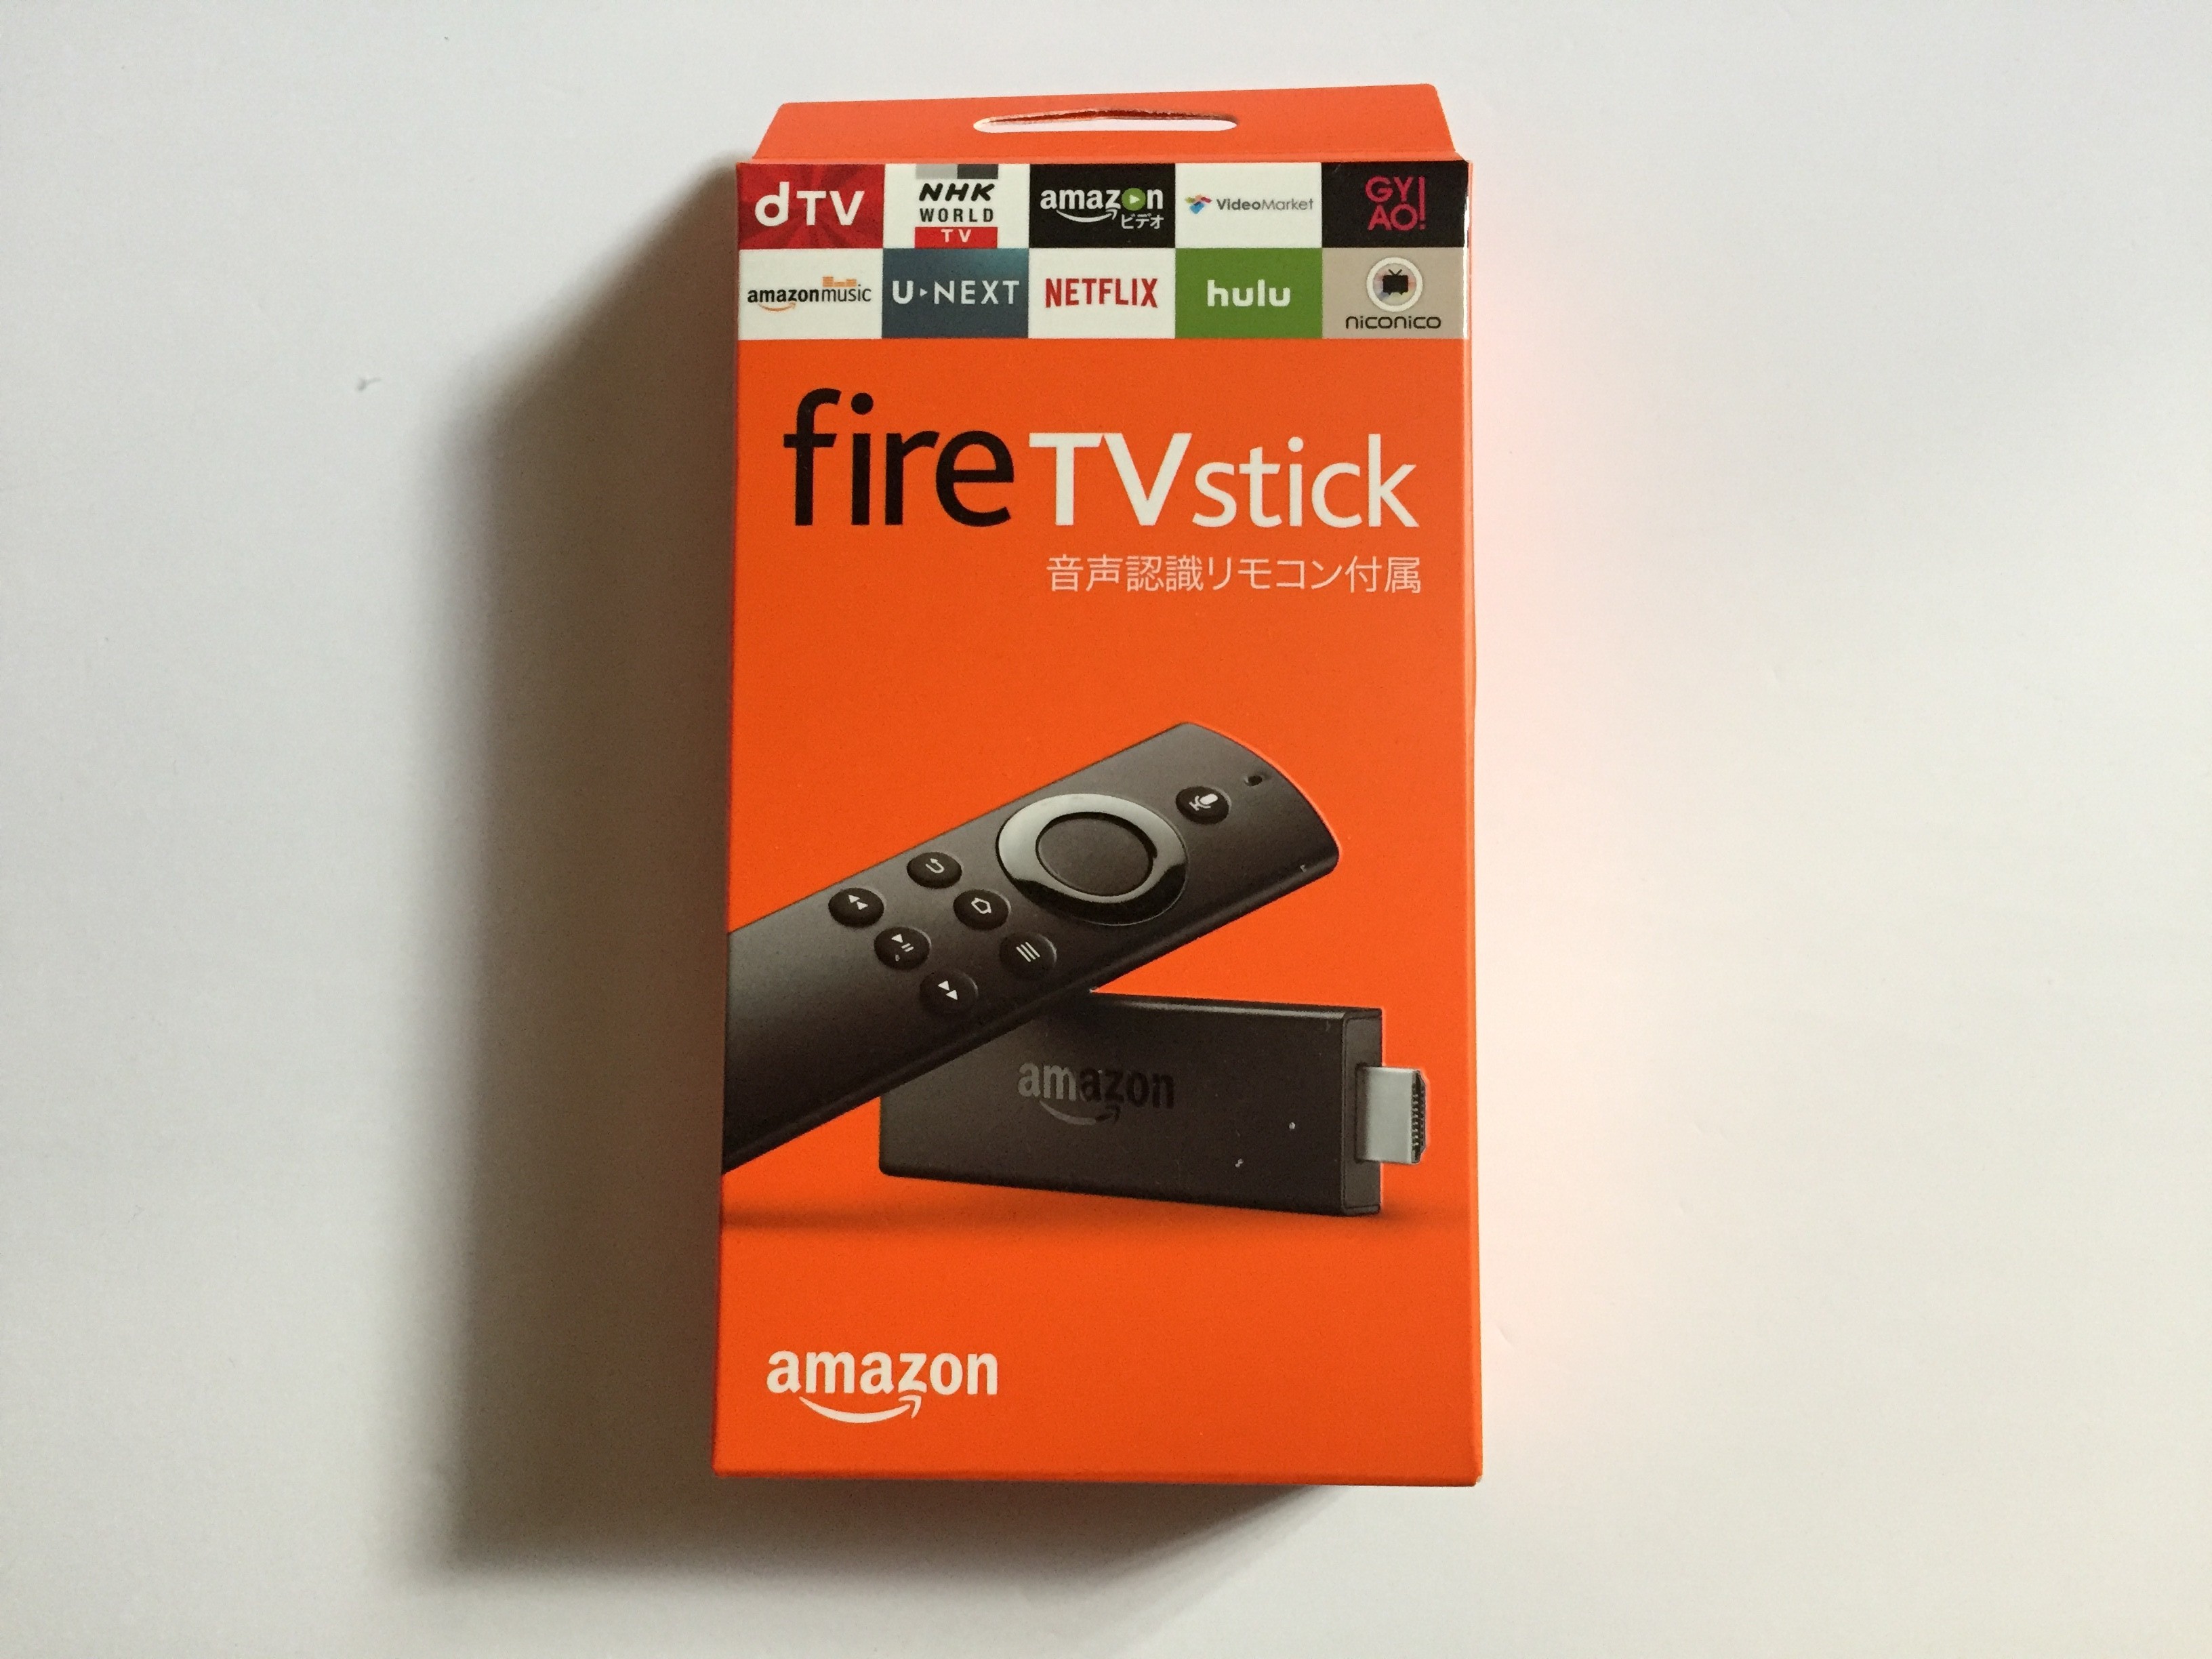 【プライム会員おすすめ】新型Amazon Fire TV Stick買いですよー24